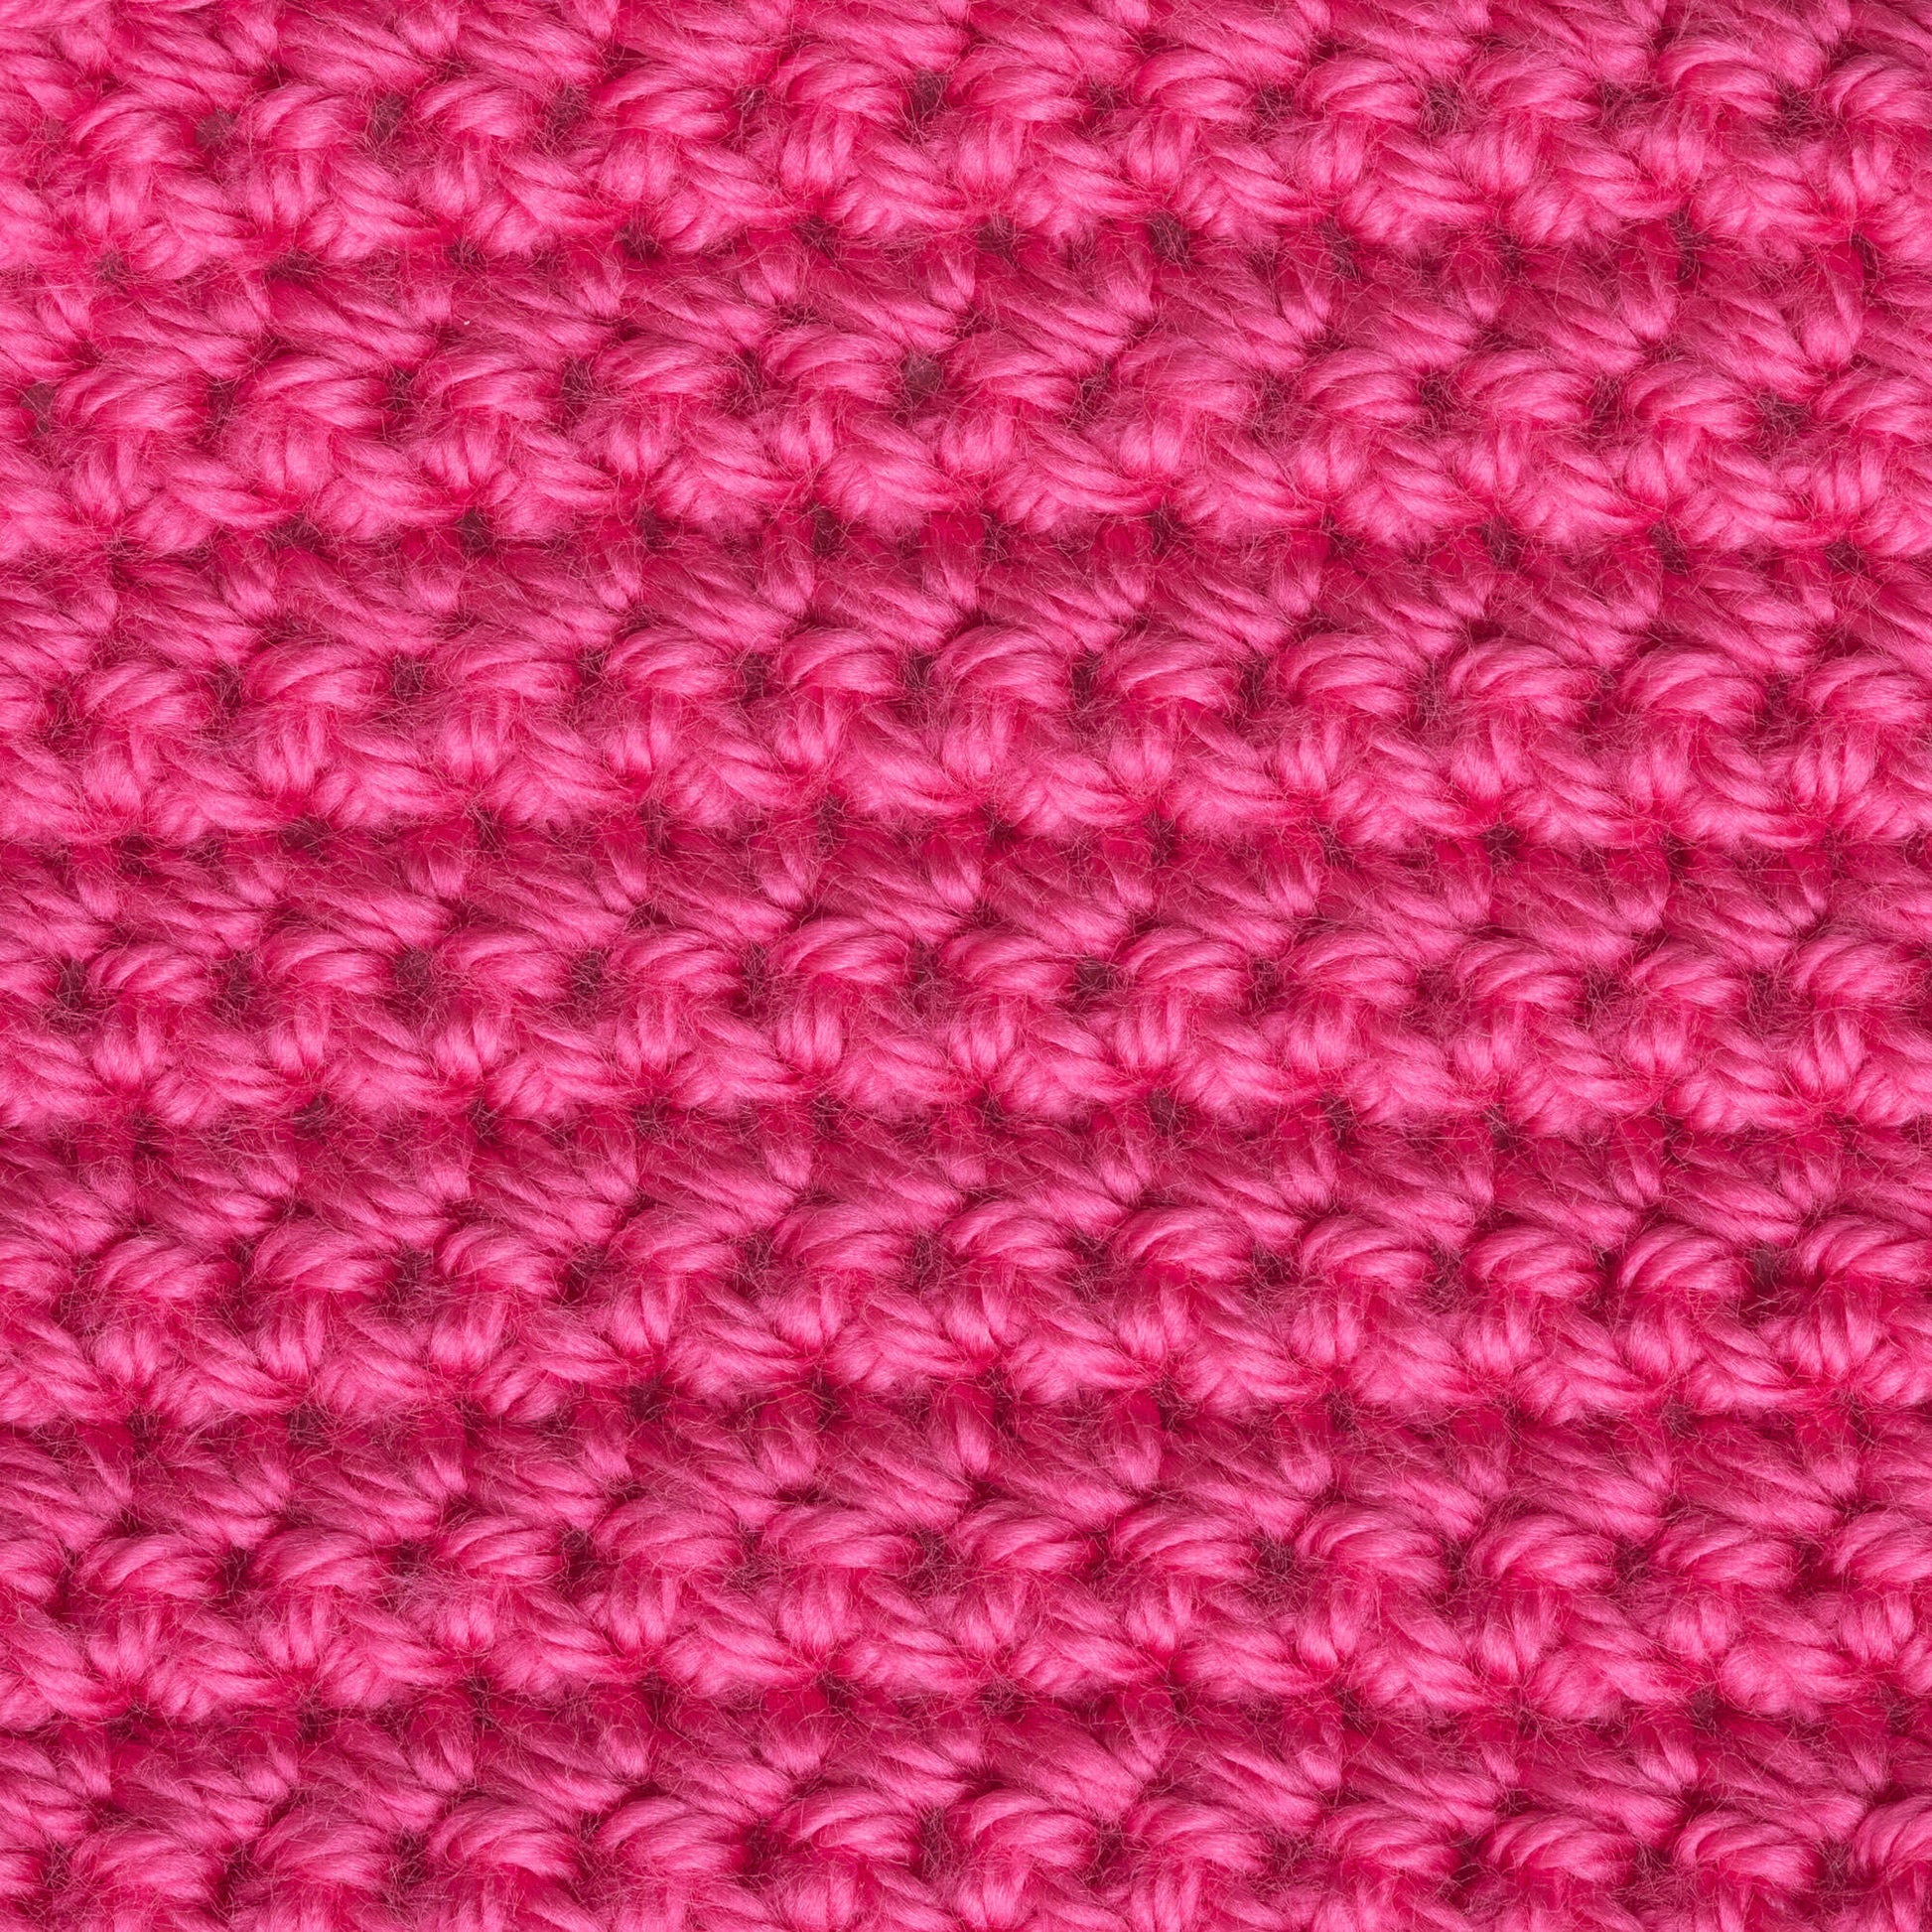 Caron Simply Soft - Reds  Soft yarn, Yarn, Yarn for sale